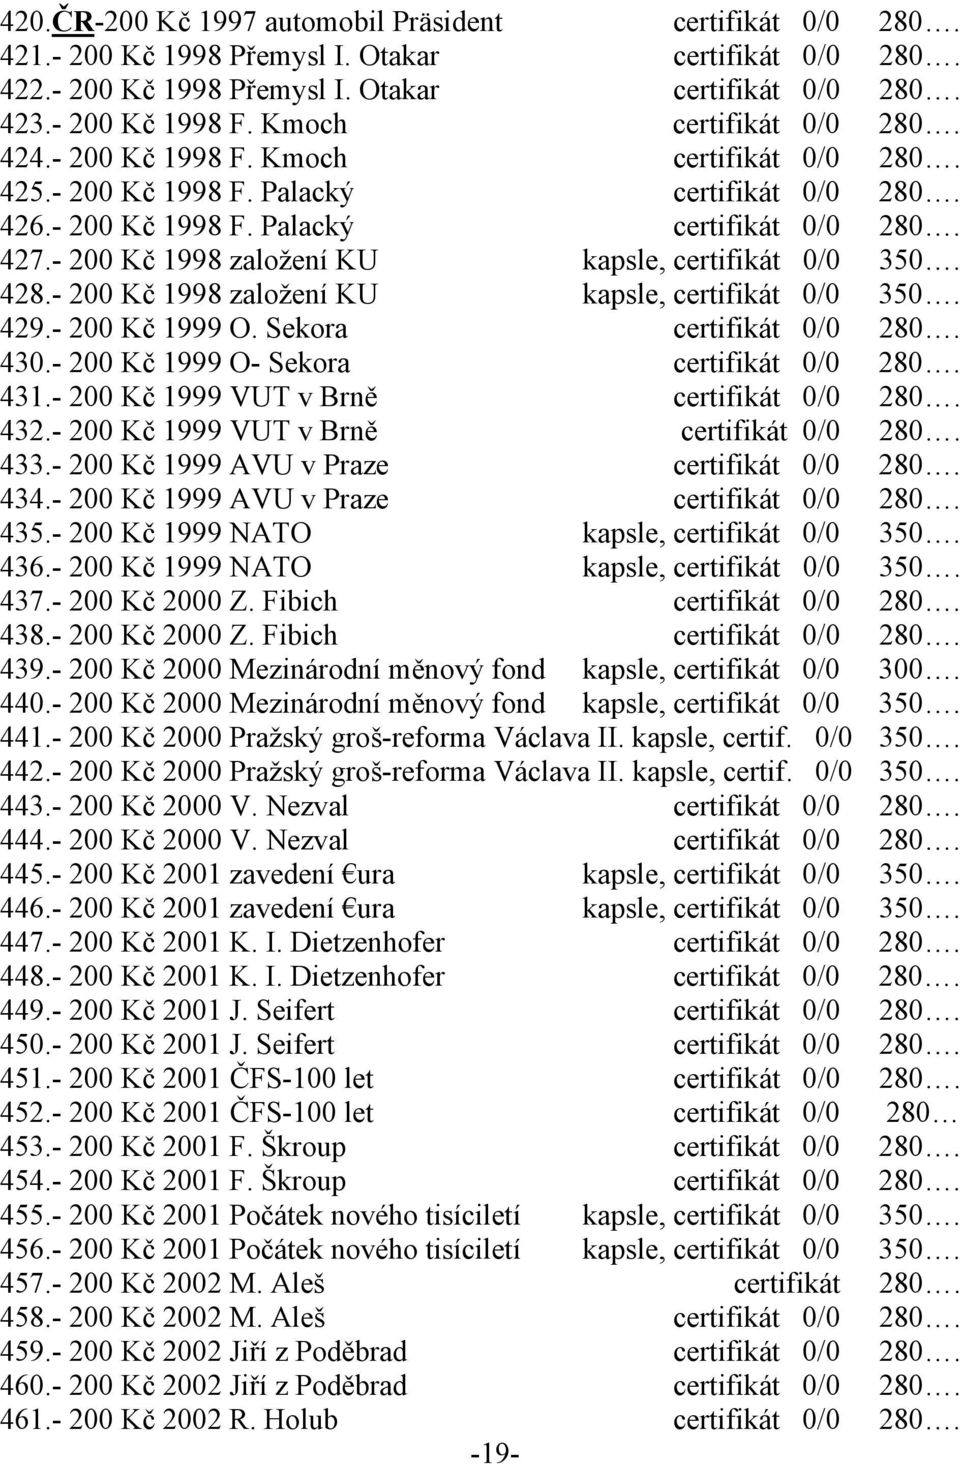 - 200 Kč 1998 založení KU kapsle, certifikát 0/0 350. 428.- 200 Kč 1998 založení KU kapsle, certifikát 0/0 350. 429.- 200 Kč 1999 O. Sekora certifikát 0/0 280. 430.